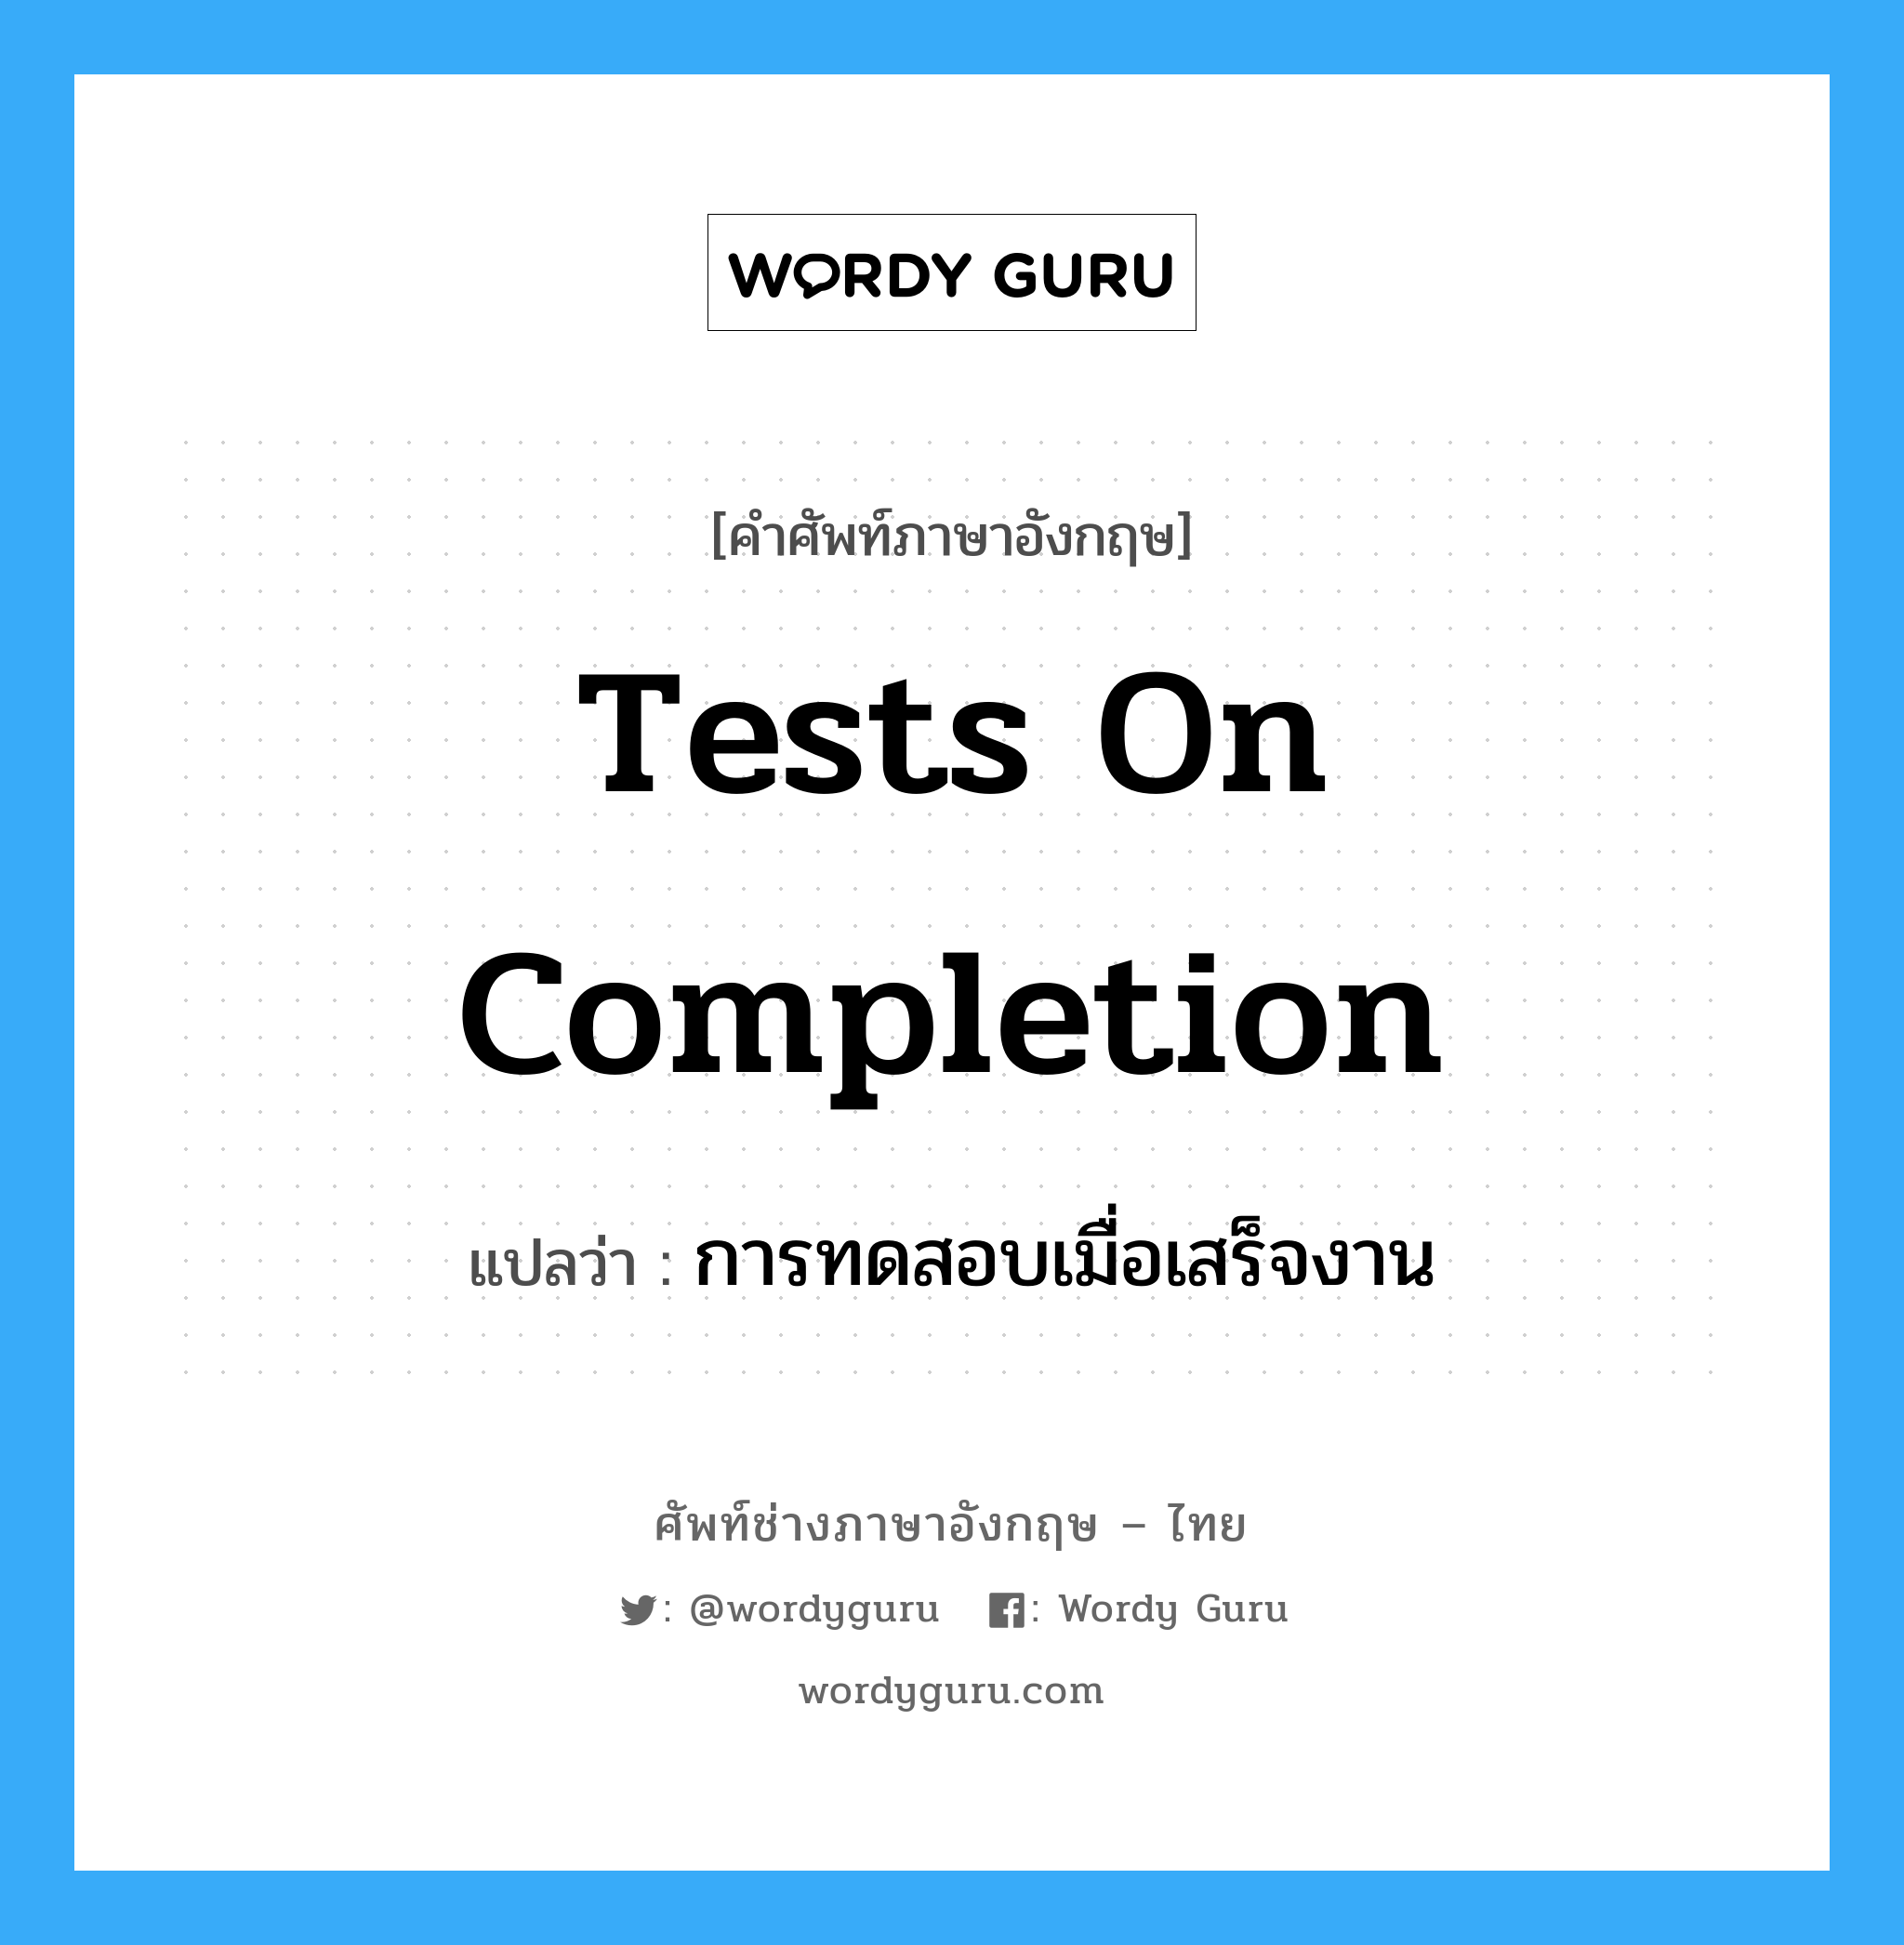 การทดสอบเมื่อเสร็จงาน ภาษาอังกฤษ?, คำศัพท์ช่างภาษาอังกฤษ - ไทย การทดสอบเมื่อเสร็จงาน คำศัพท์ภาษาอังกฤษ การทดสอบเมื่อเสร็จงาน แปลว่า Tests on Completion